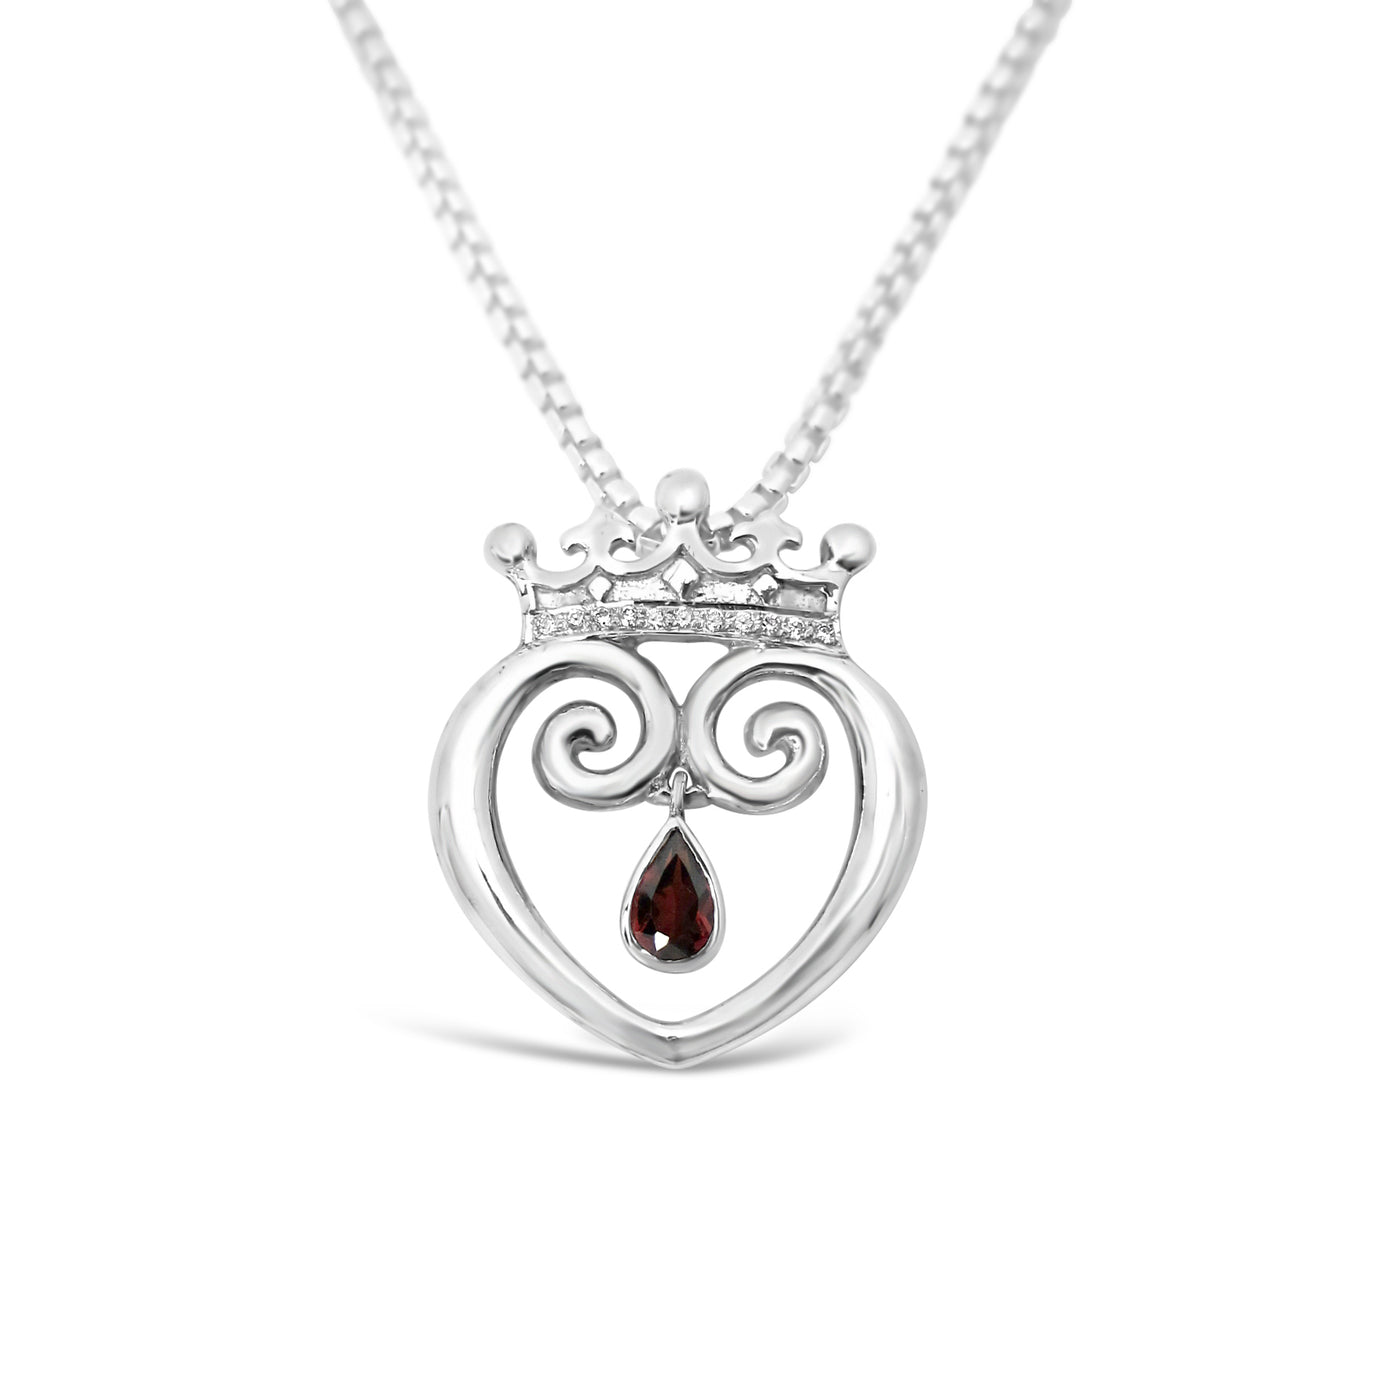 Queen of Hearts with Garnet & Diamonds - Medium